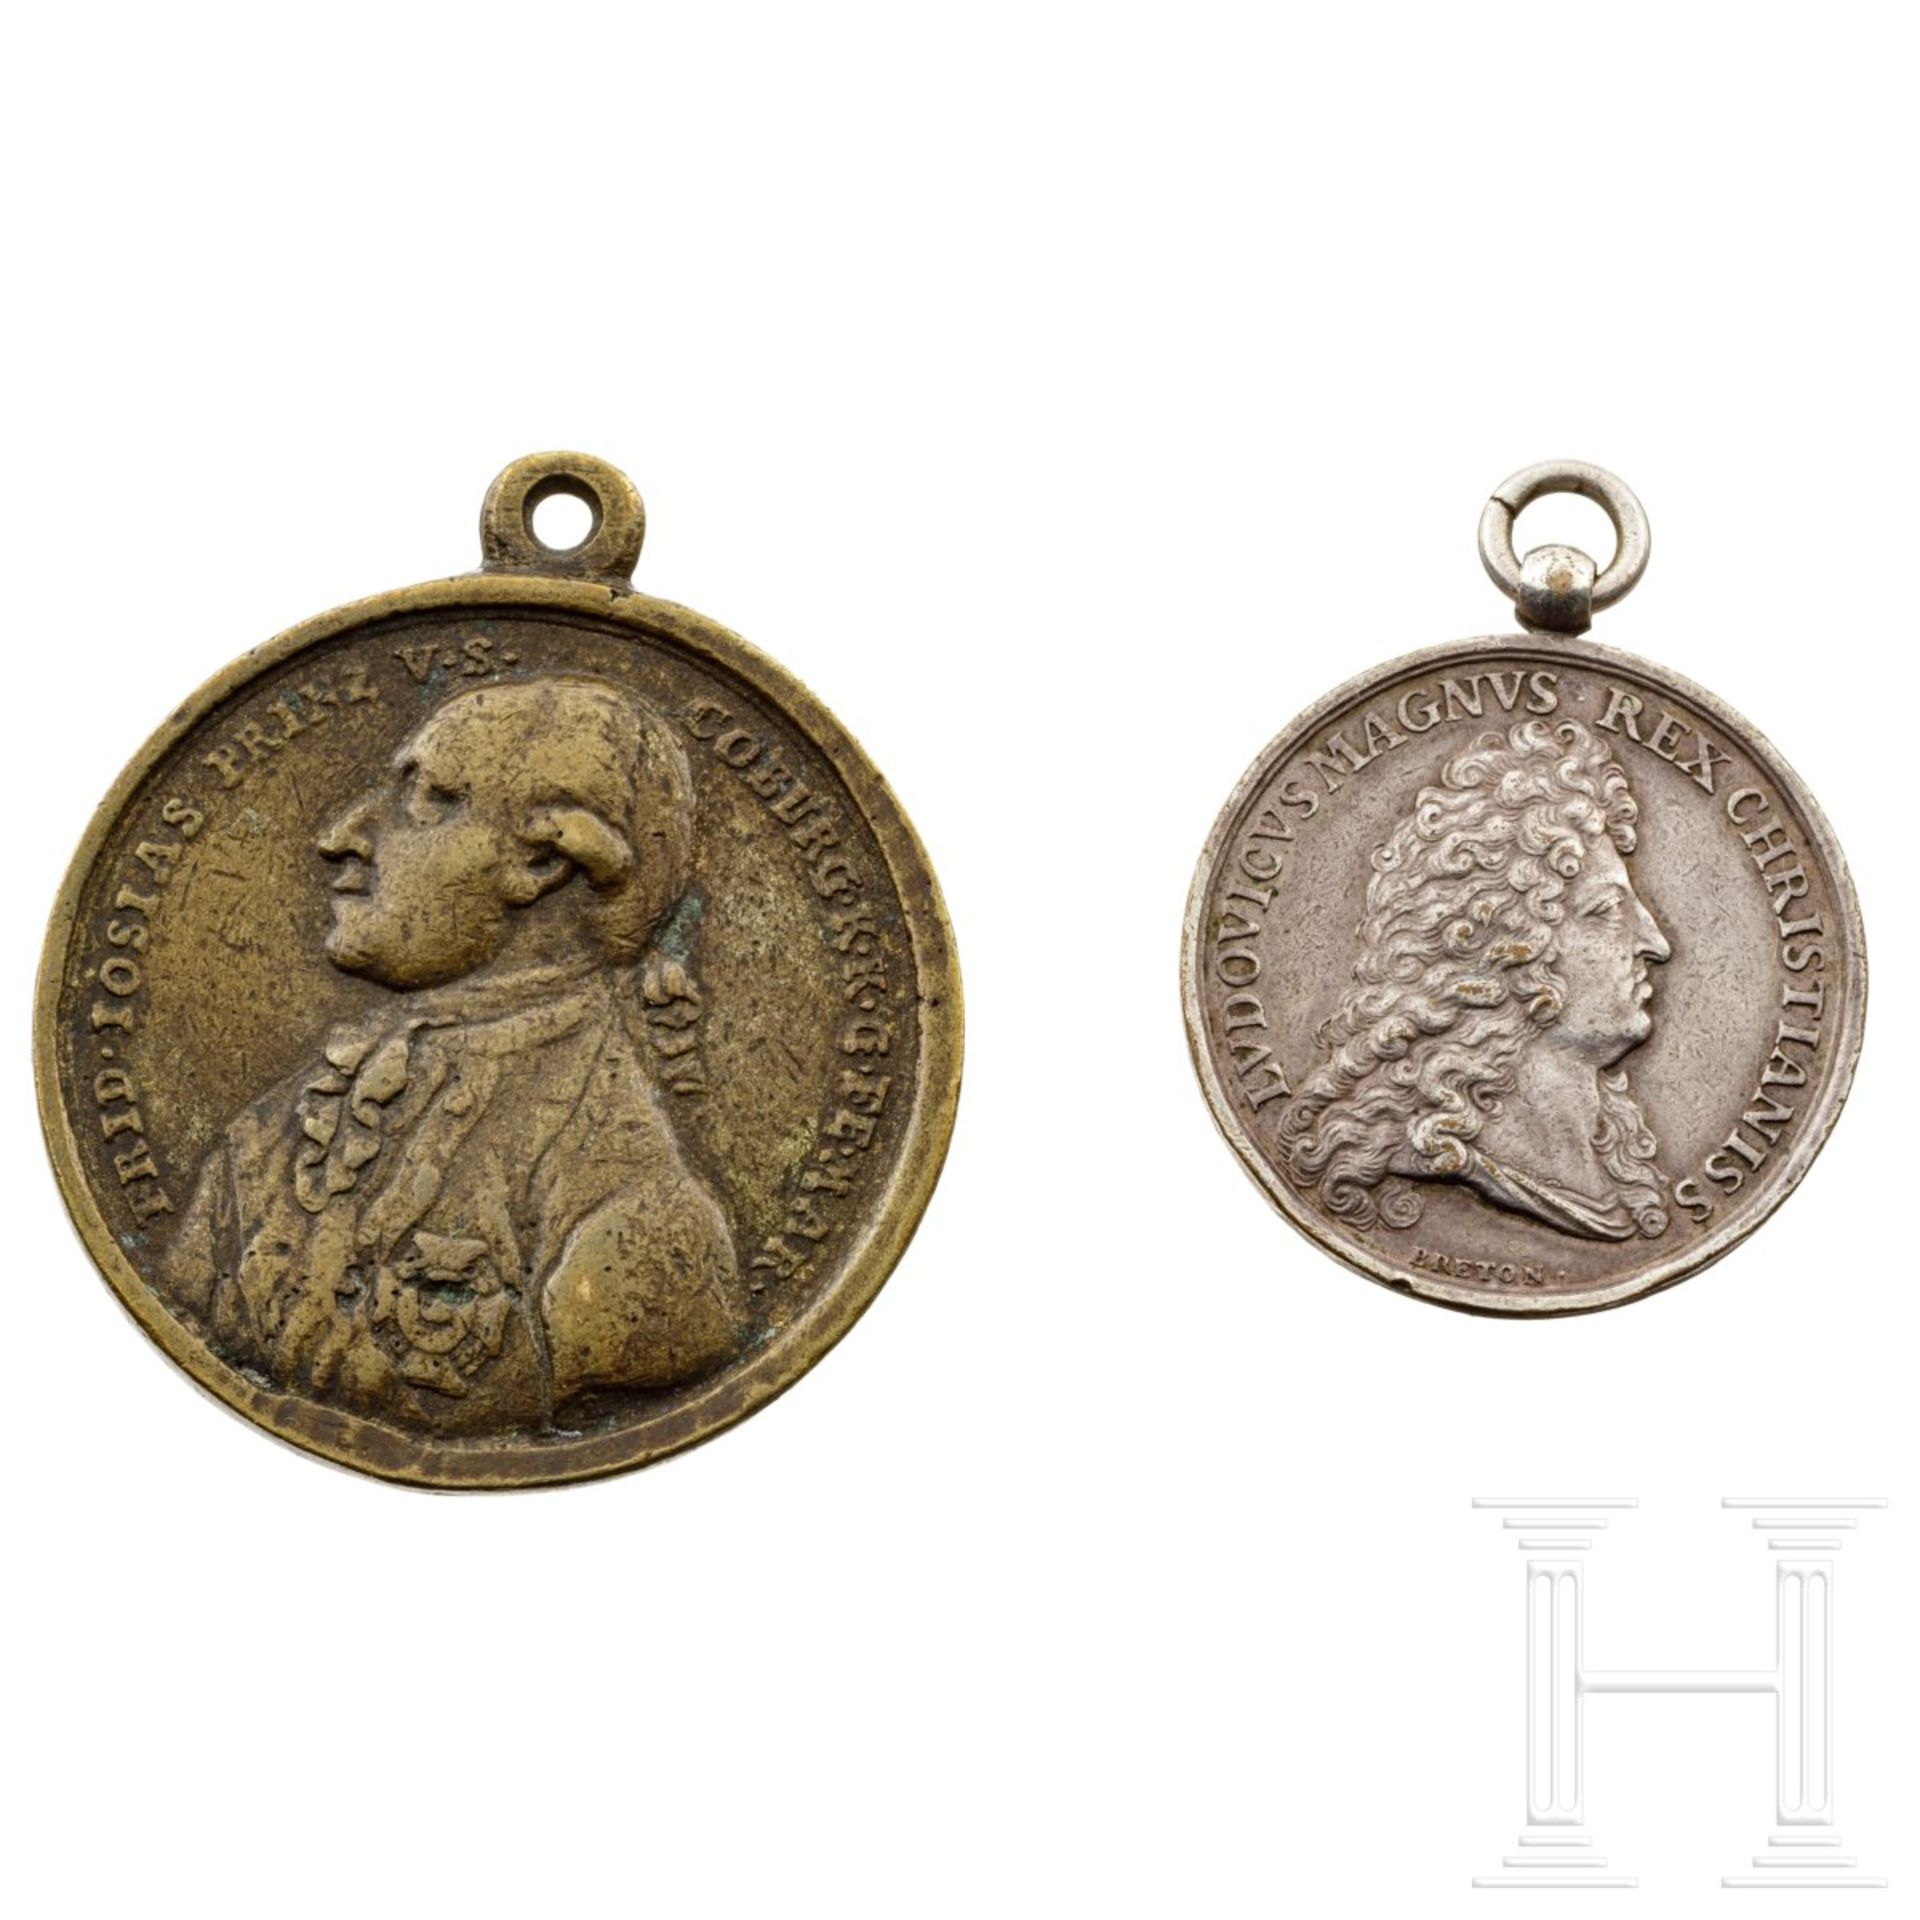 Zwei Medaillen, Deutschland und Frankreich, datiert 1789 und 1684